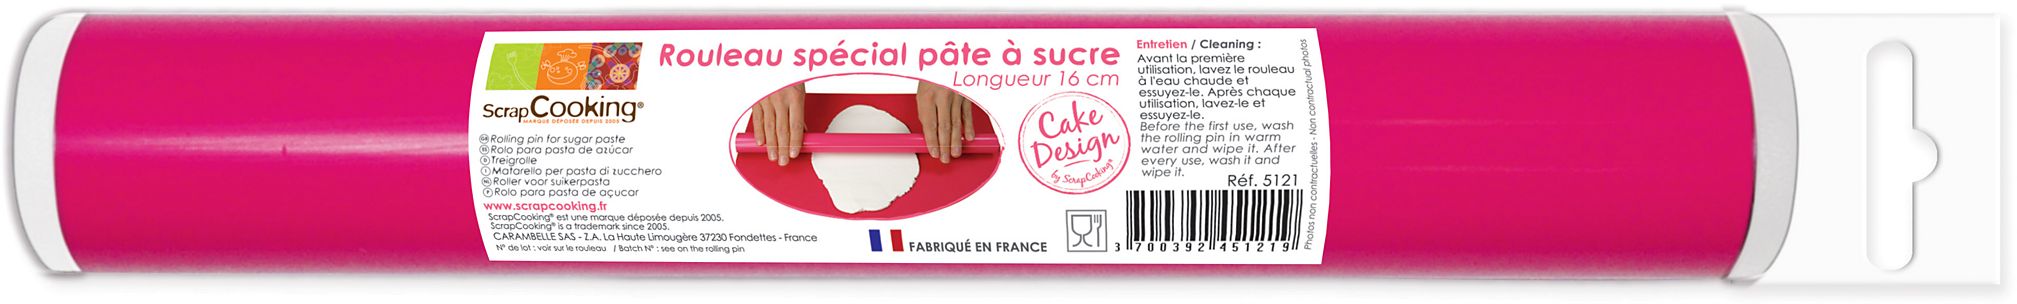 Rouleau pate à sucre 38 cm ScrapCooking ® - Univers Cake